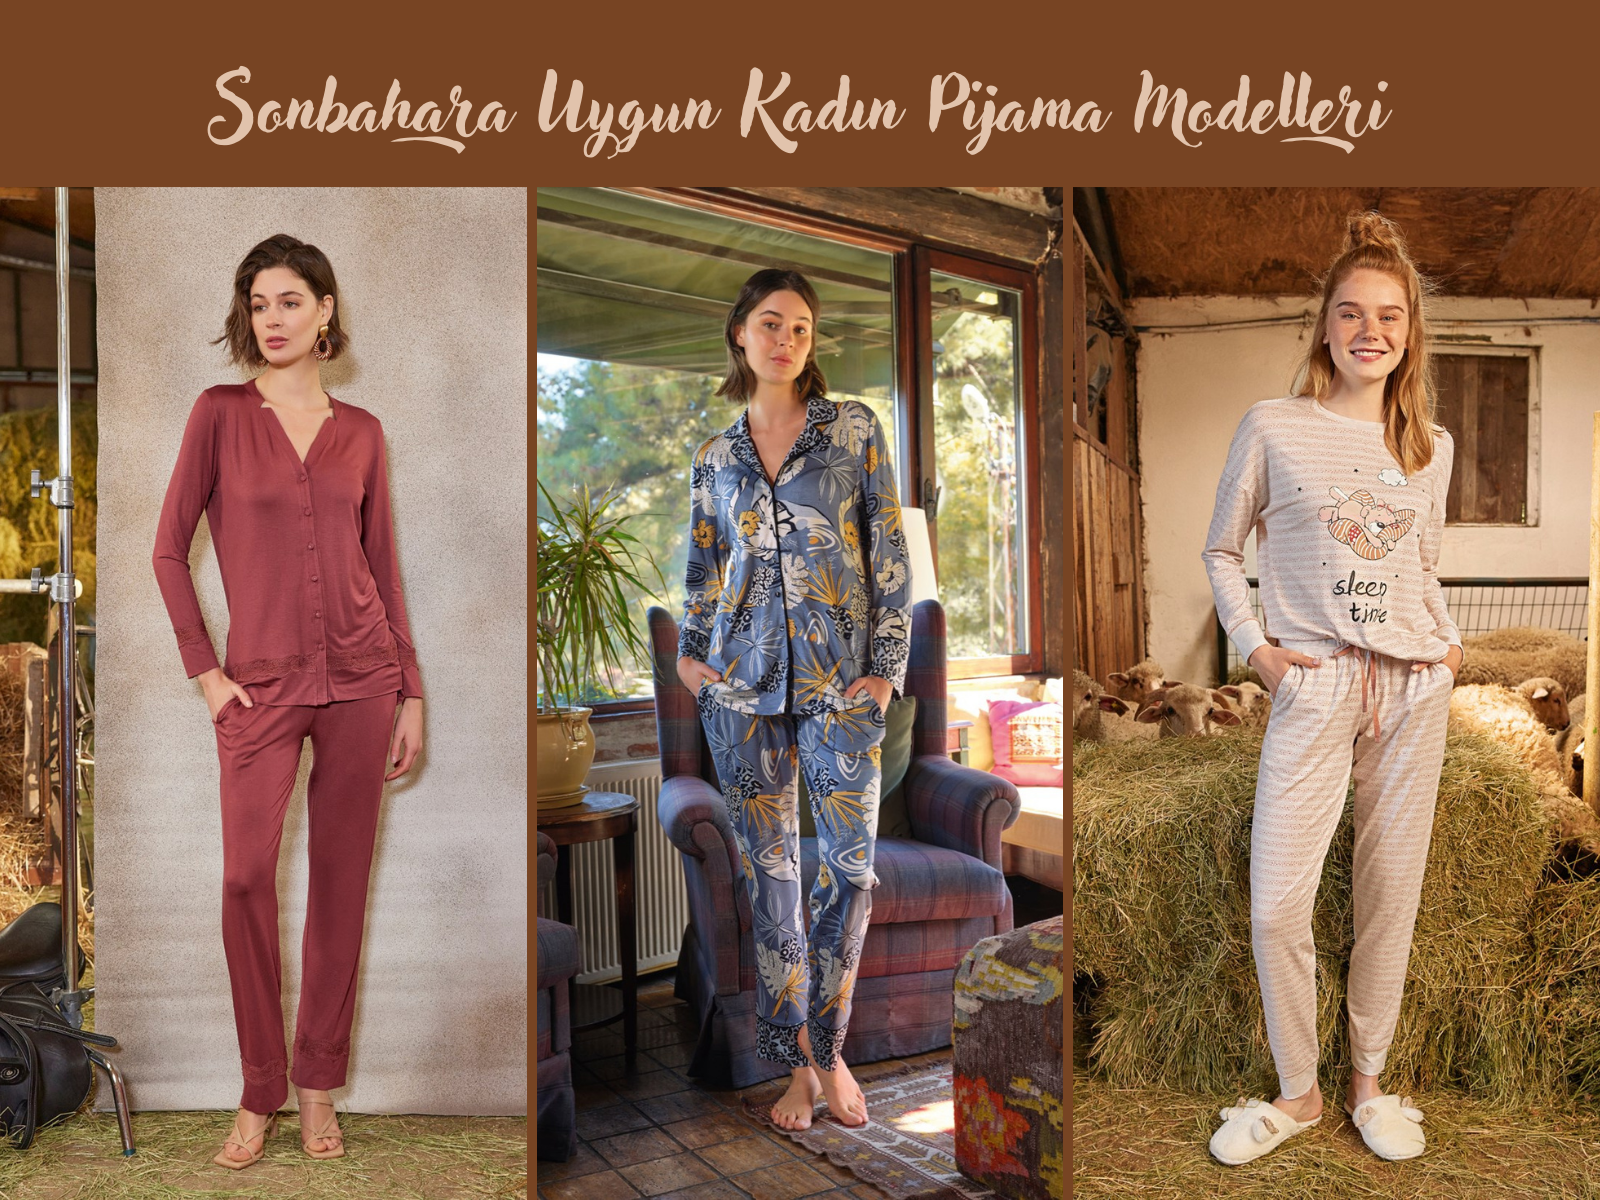 Sonbahara Uygun Kadın Pijama Modelleri